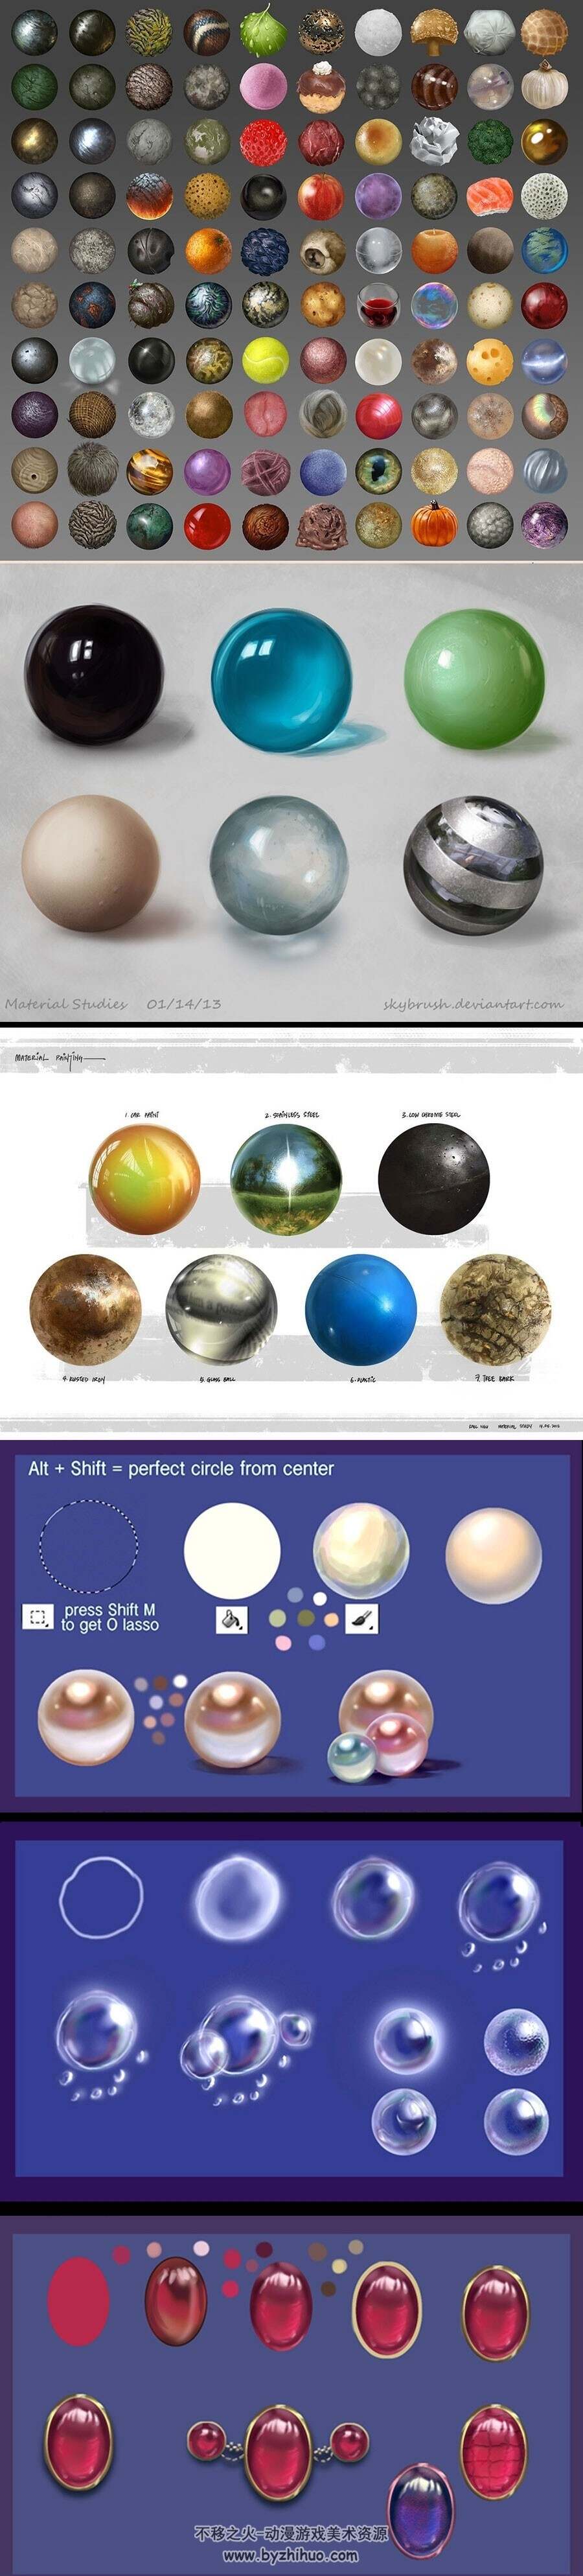 各种材质球参考 26P